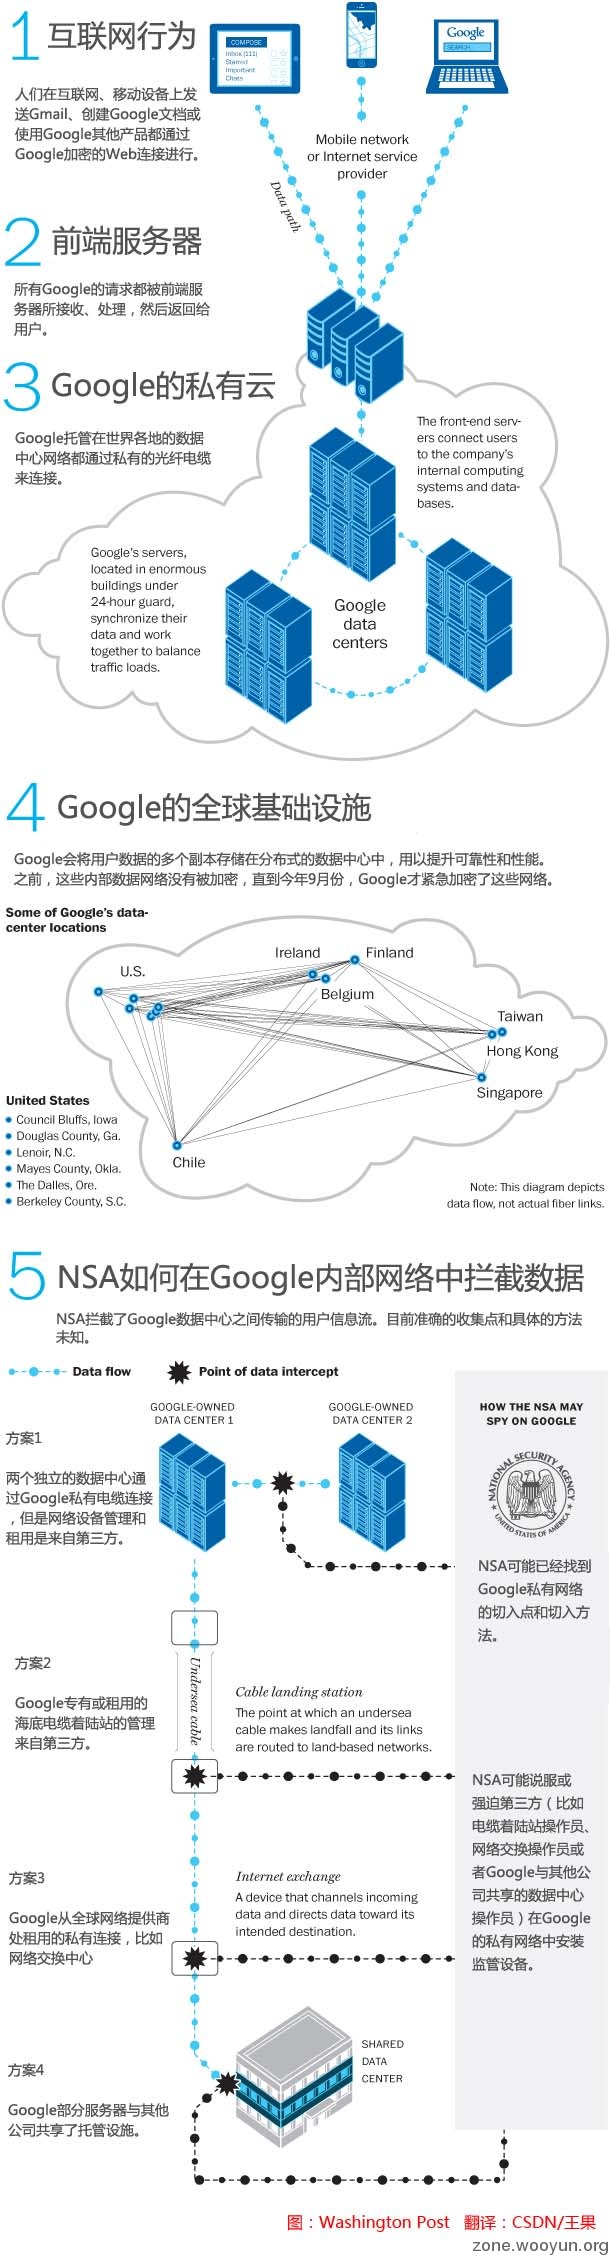 下面这张图以Google为例，来揭示NSA和GCHQ如何侵入这些内部网络。